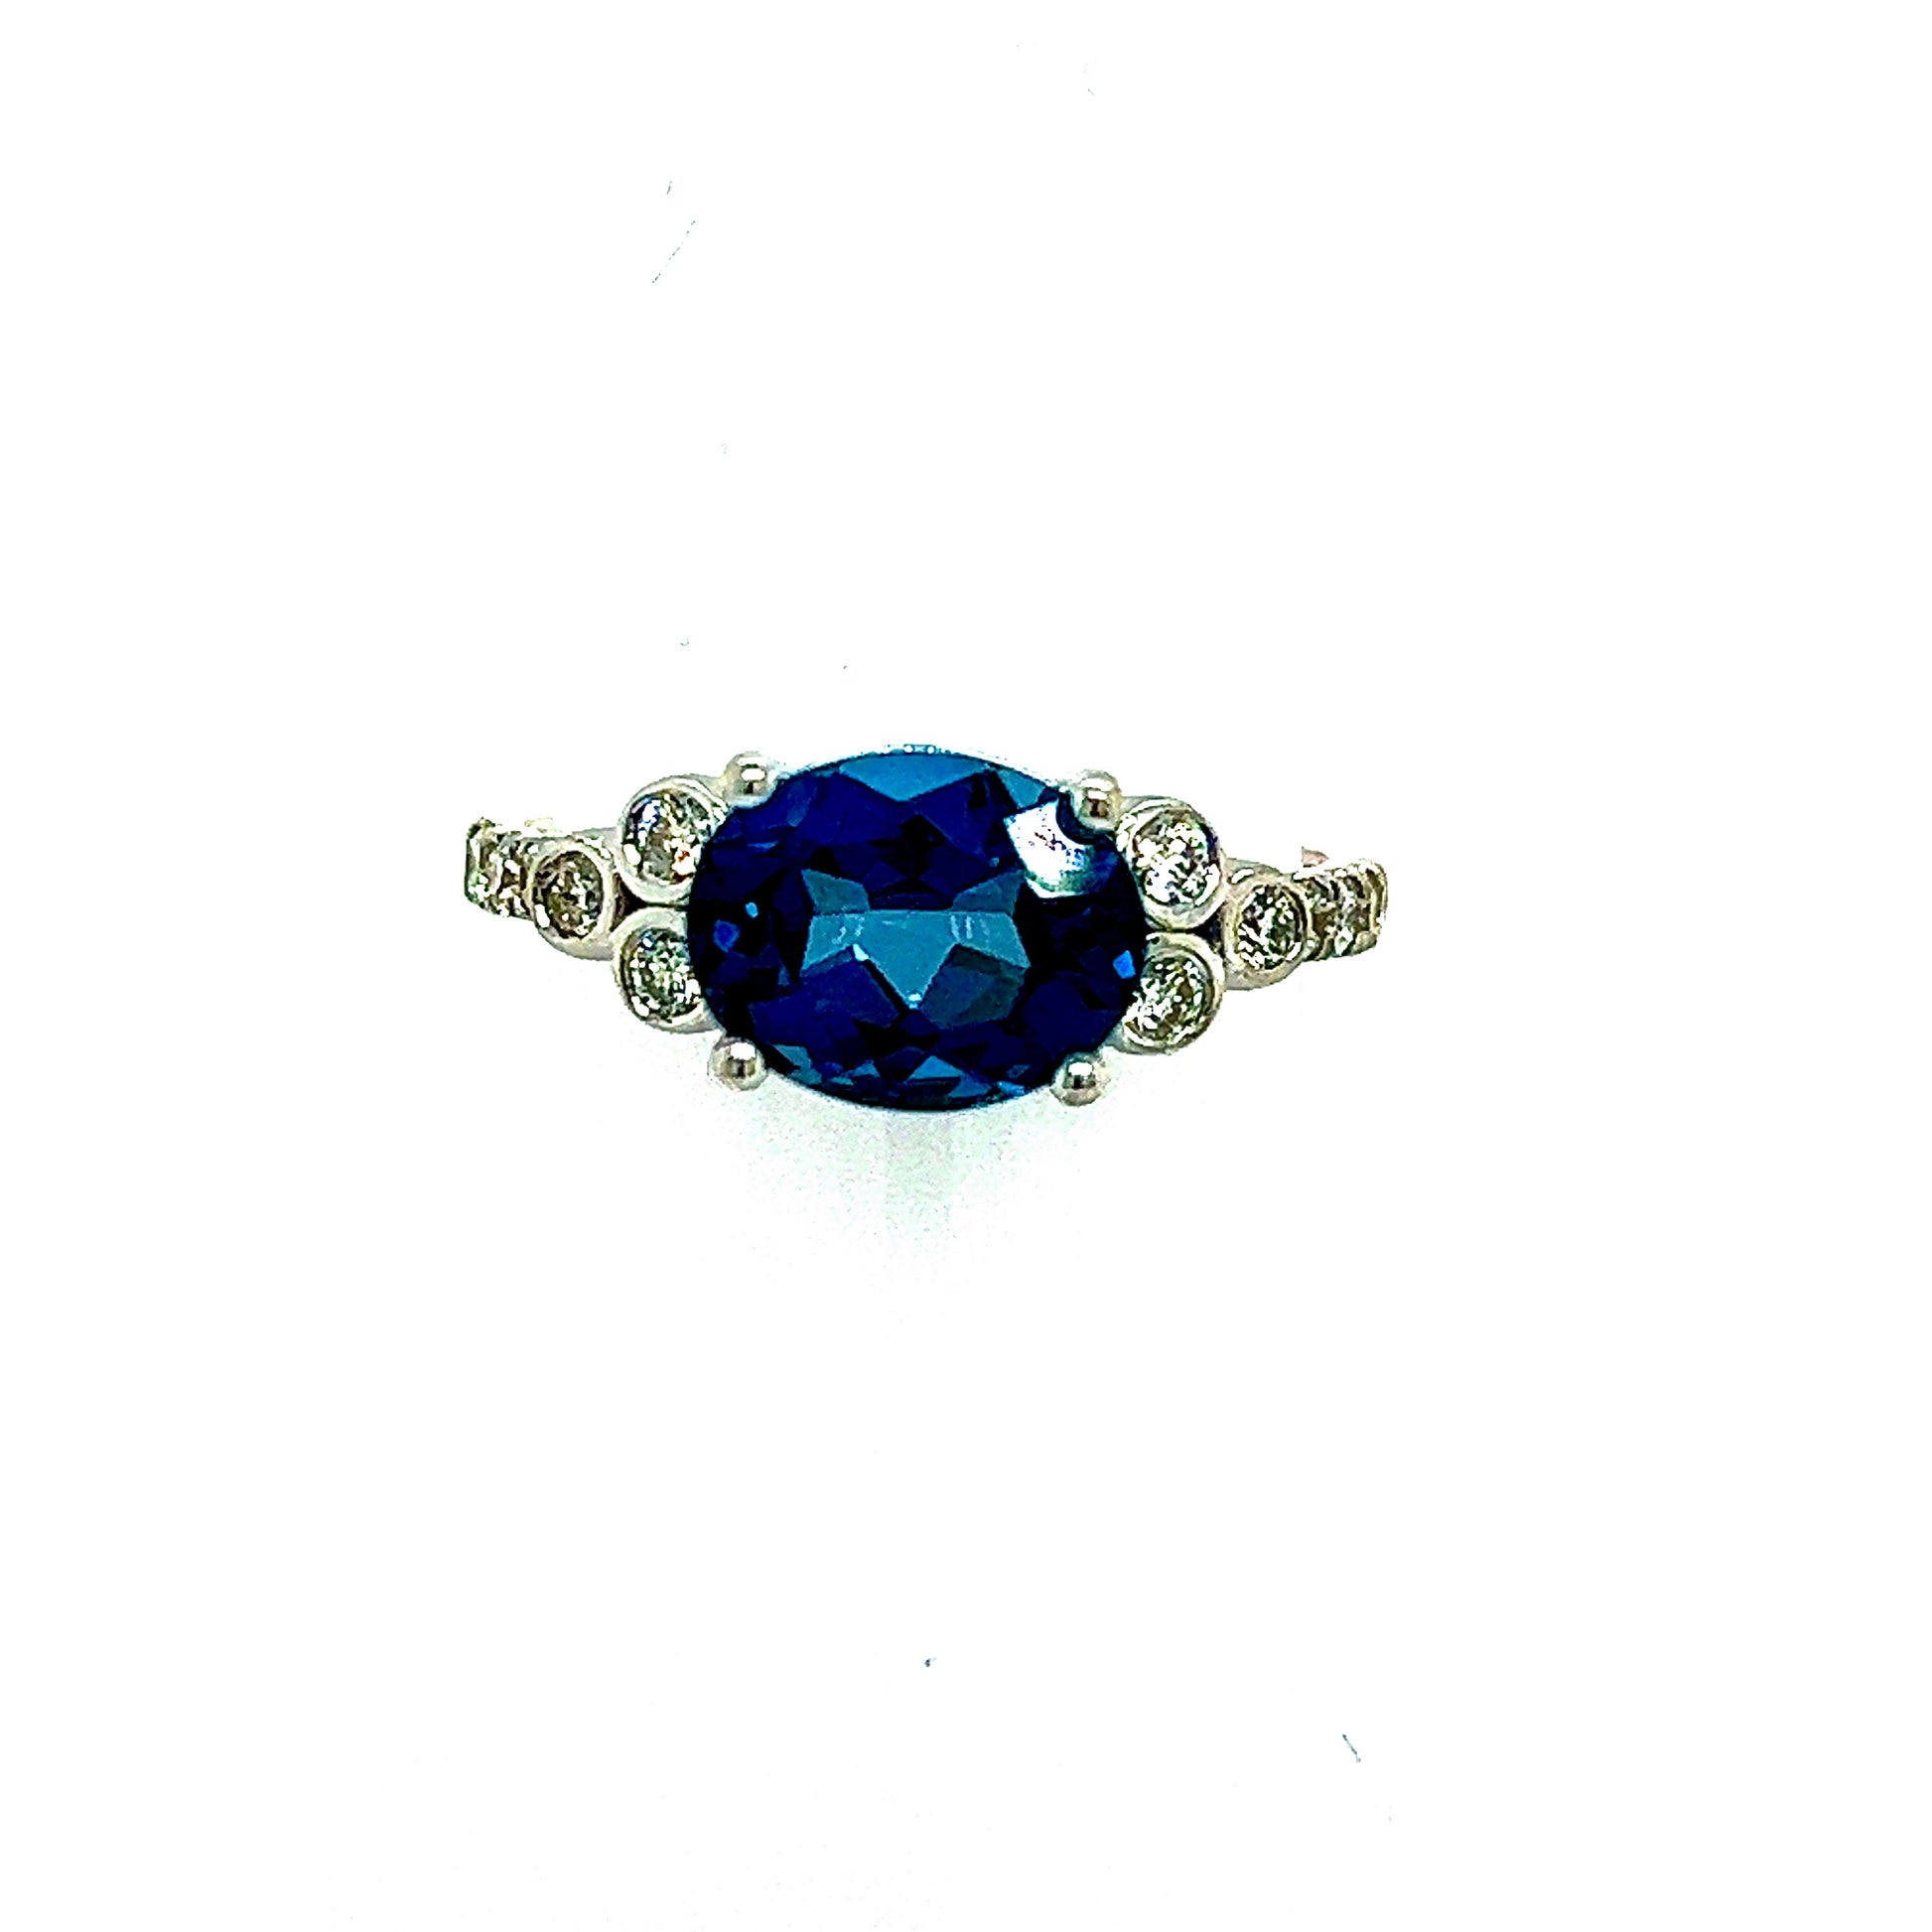 Natural Topaz Diamond Ring 6.5 14k W Gold 2.63 TCW Certified $3,490 219219 - Certified Fine Jewelry